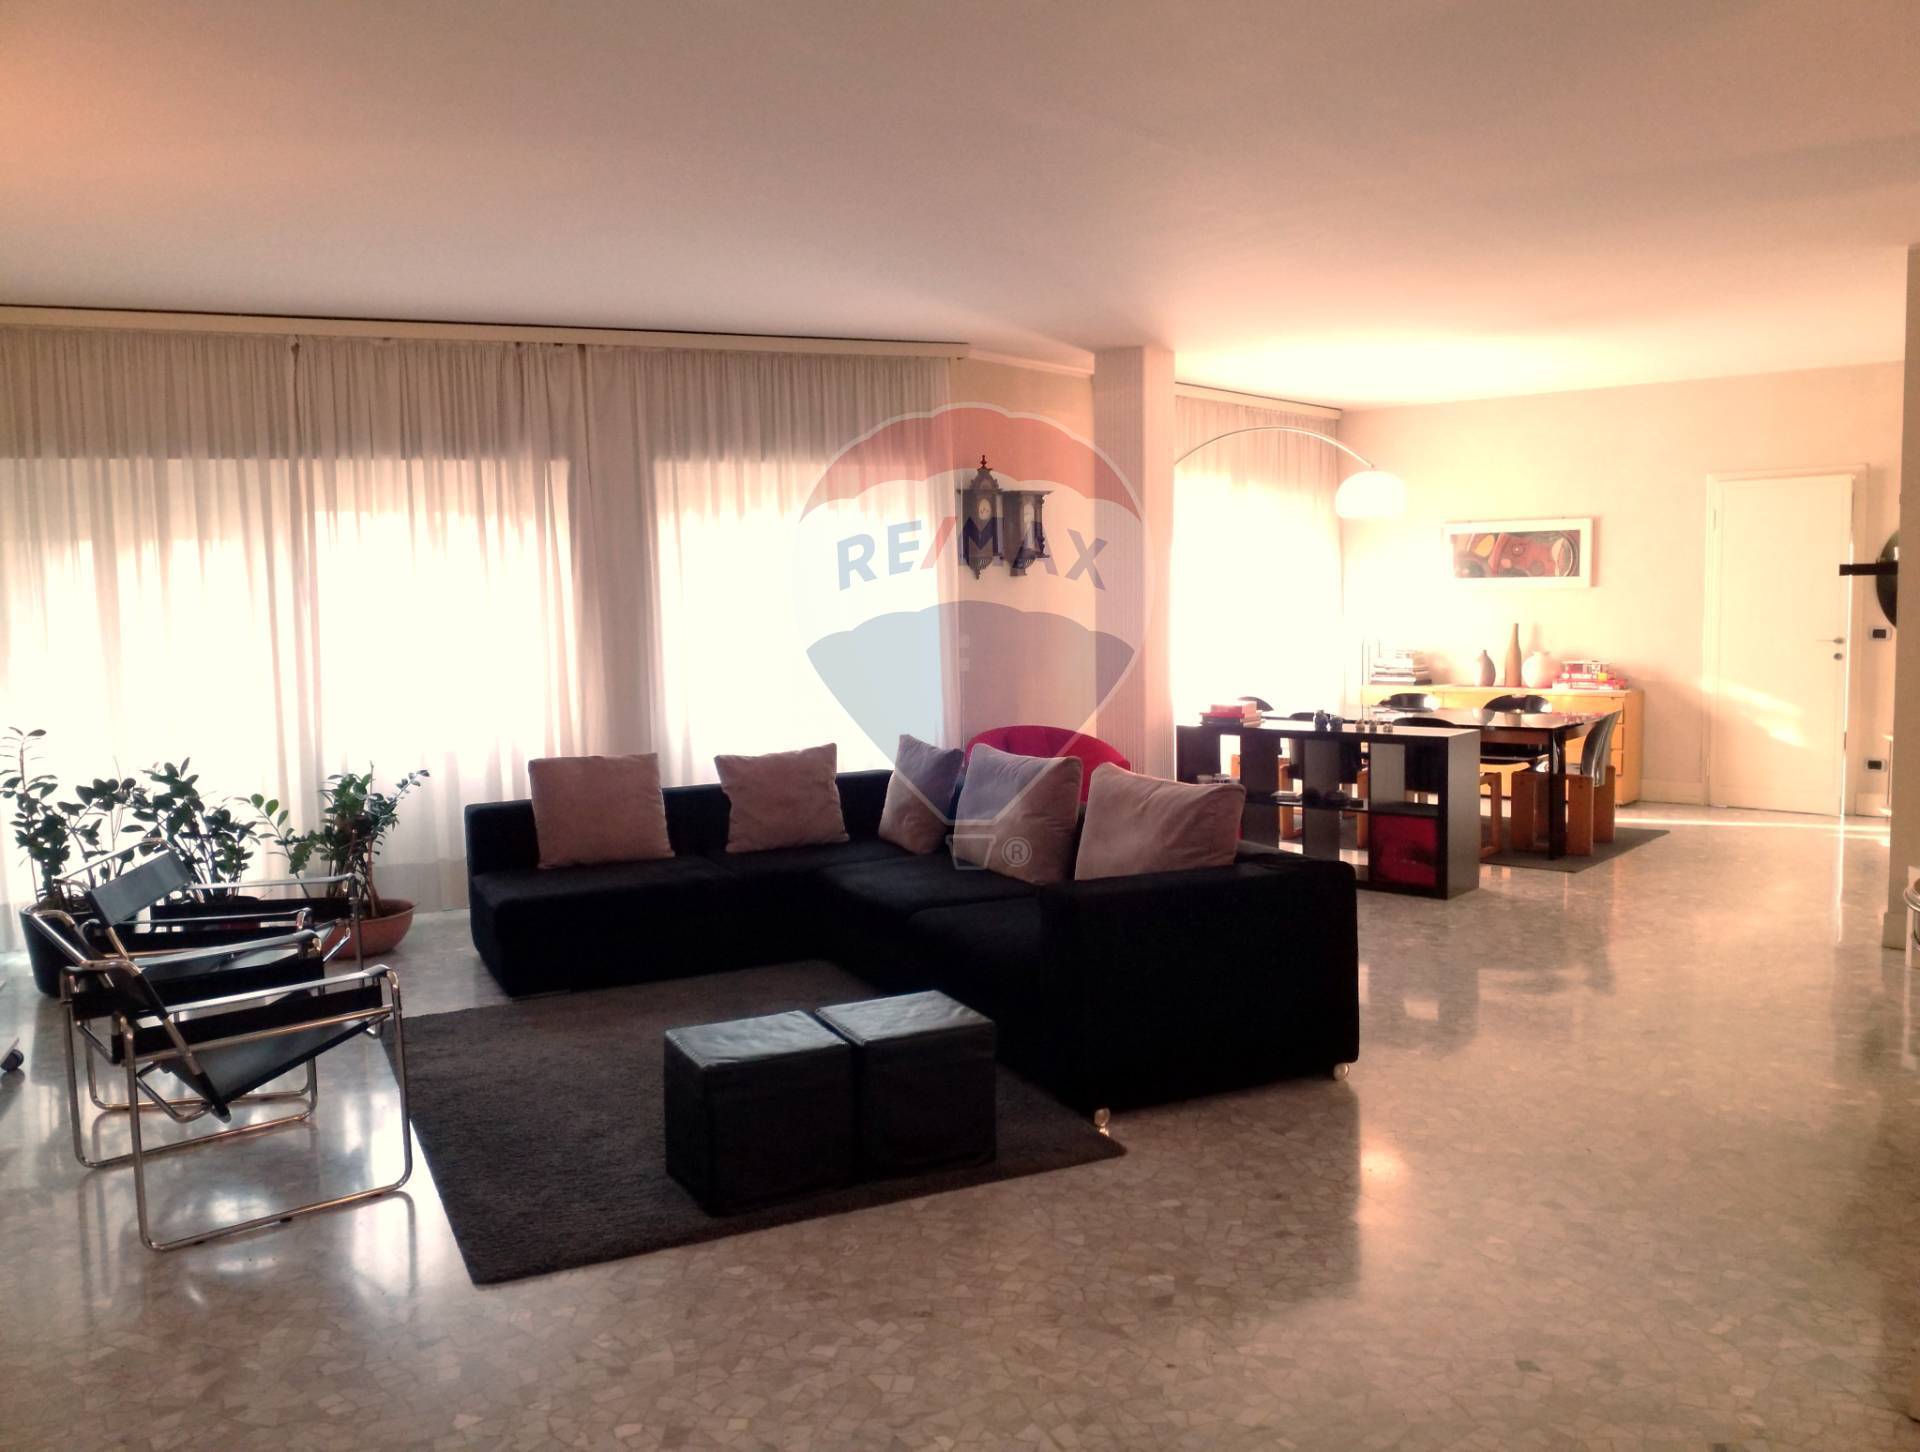 Villa Bifamiliare in vendita a Vigevano, 8 locali, prezzo € 248.000 | PortaleAgenzieImmobiliari.it